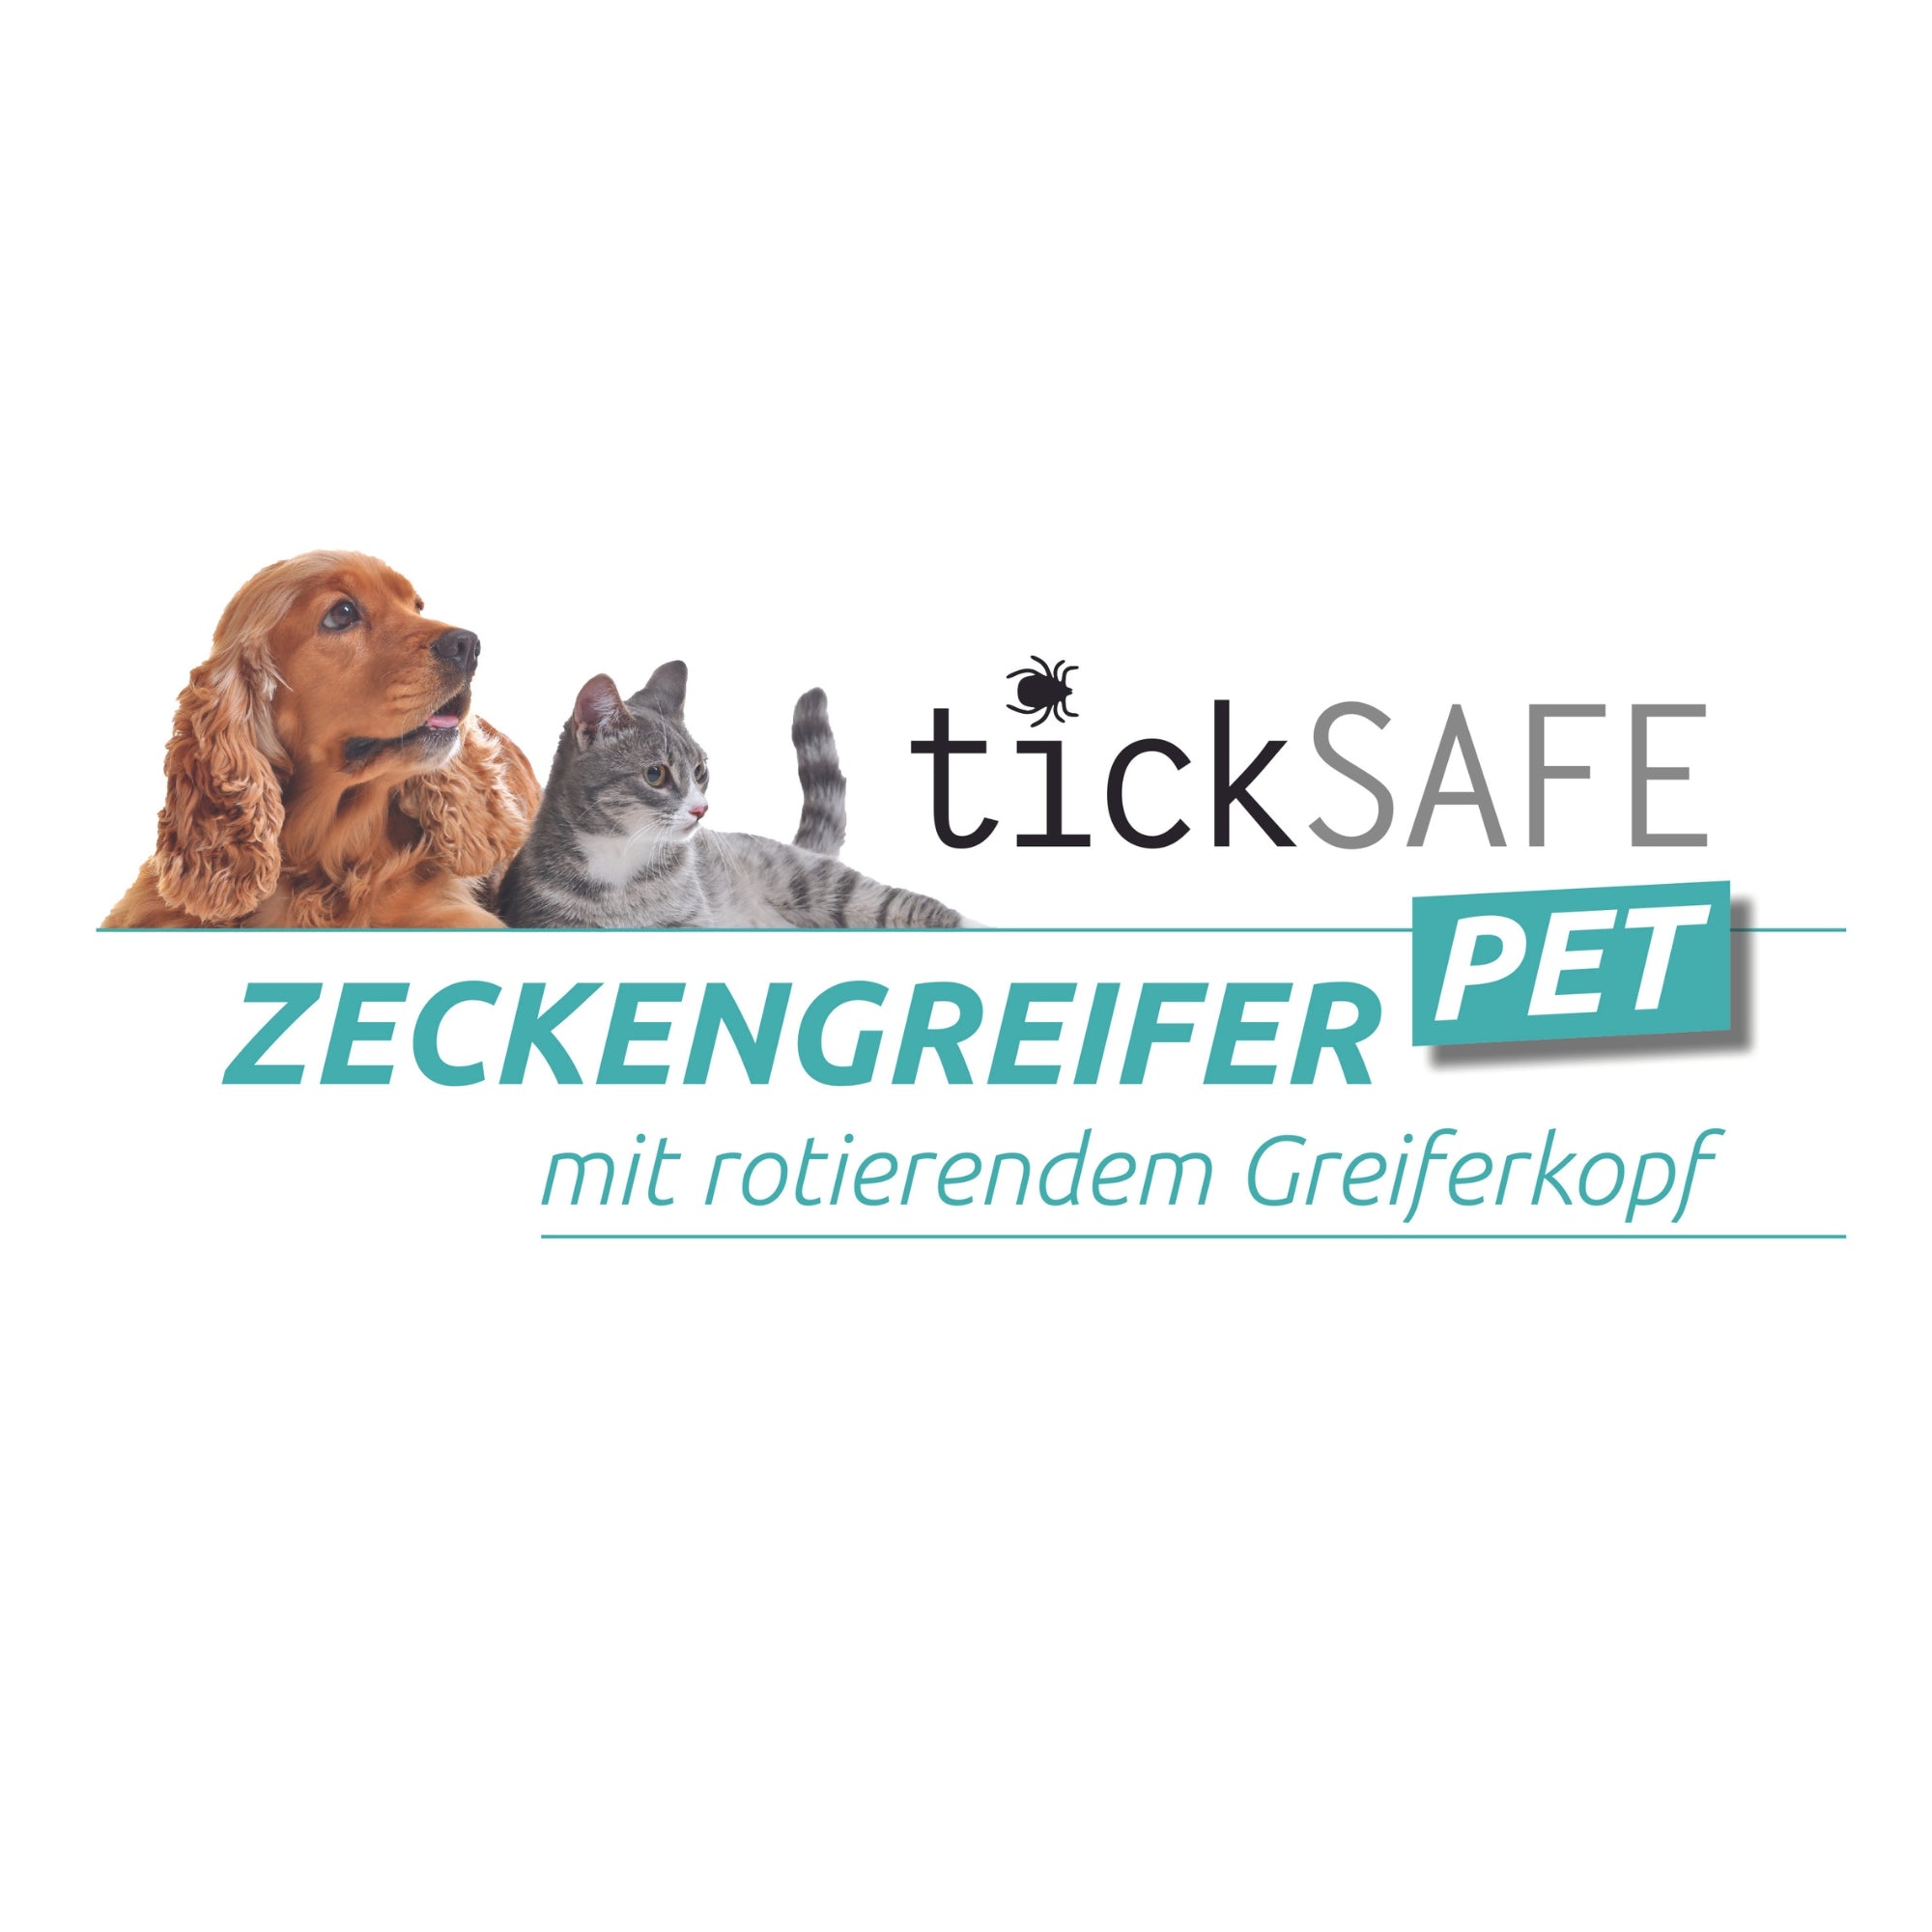 Es ist das Logo des Herstellers der Zeckenzange zu sehen, diese heißt "tickSAFE-Zeckengreifer-PET-mit rotierendem Greiferkopf".